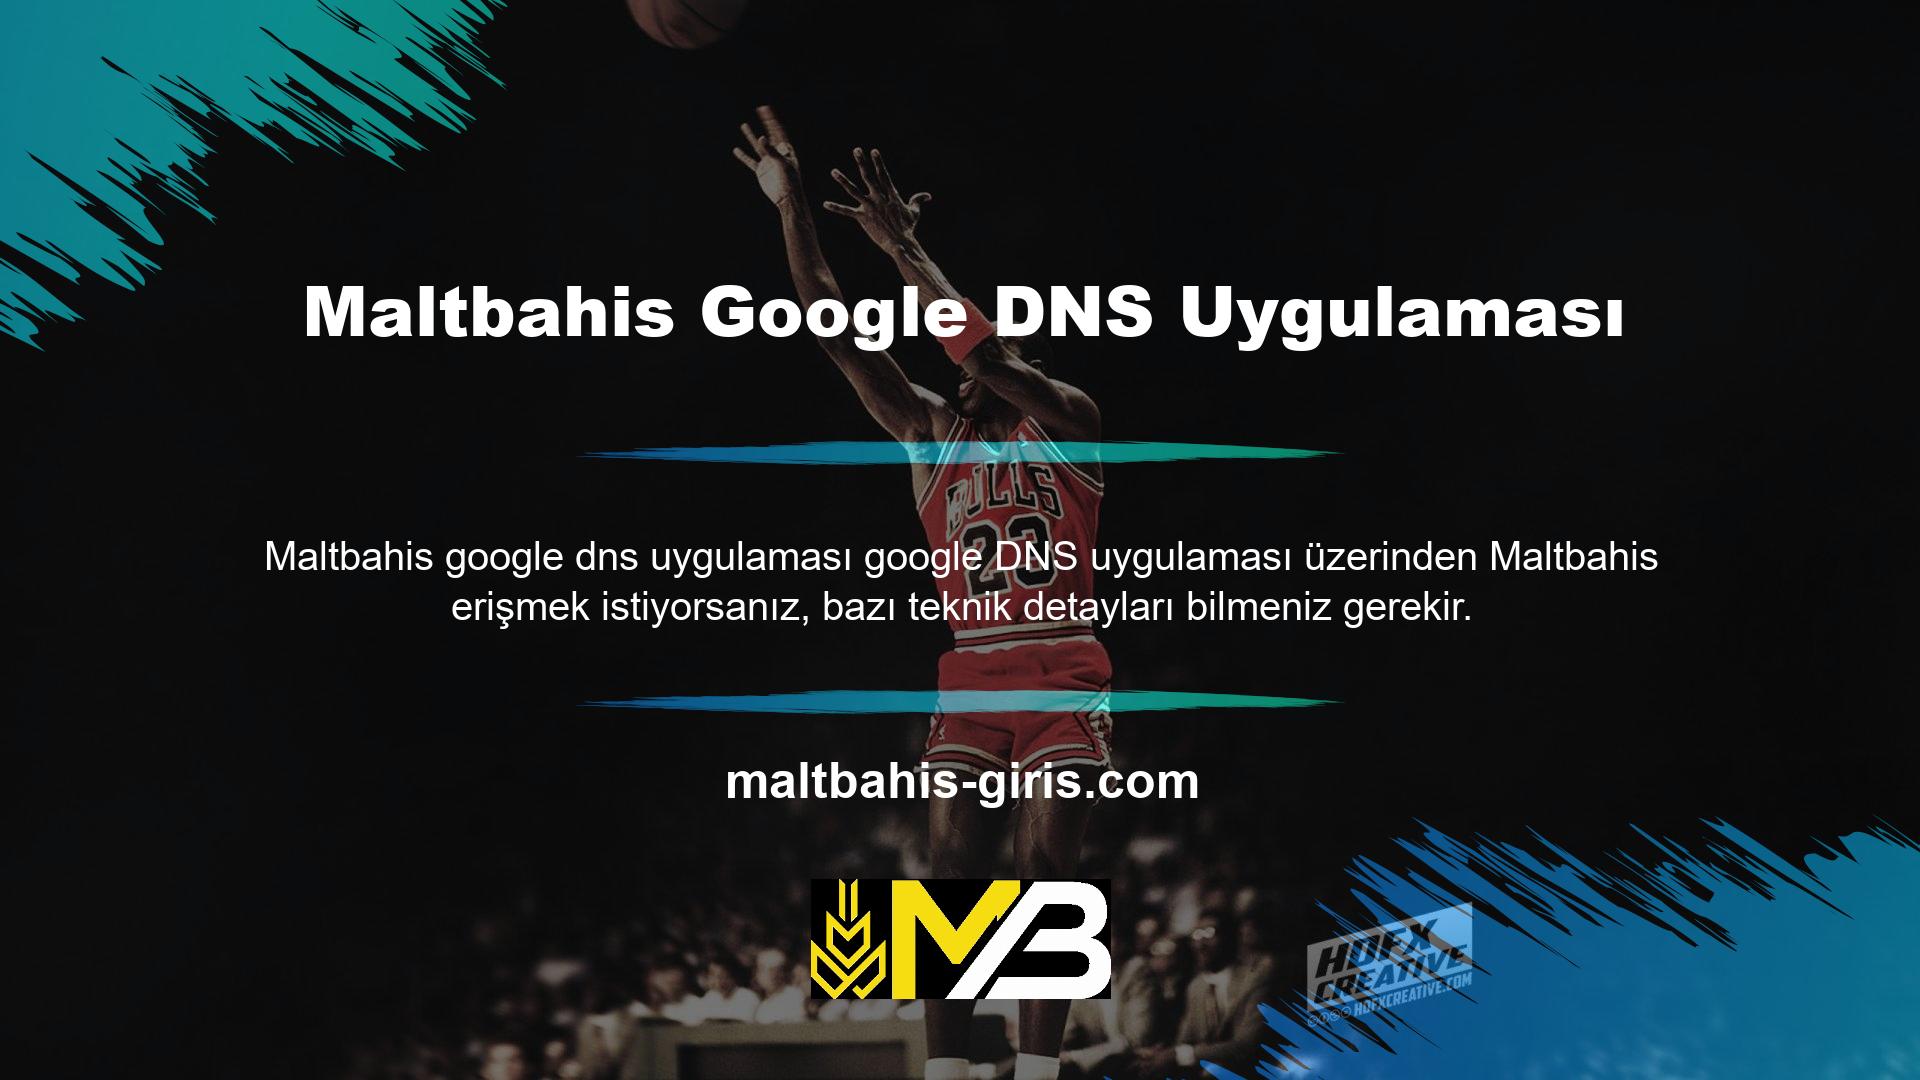 İnternette yasaklı web sitelerine bağlanmak için Google DNS adlı bir uygulama kullanır